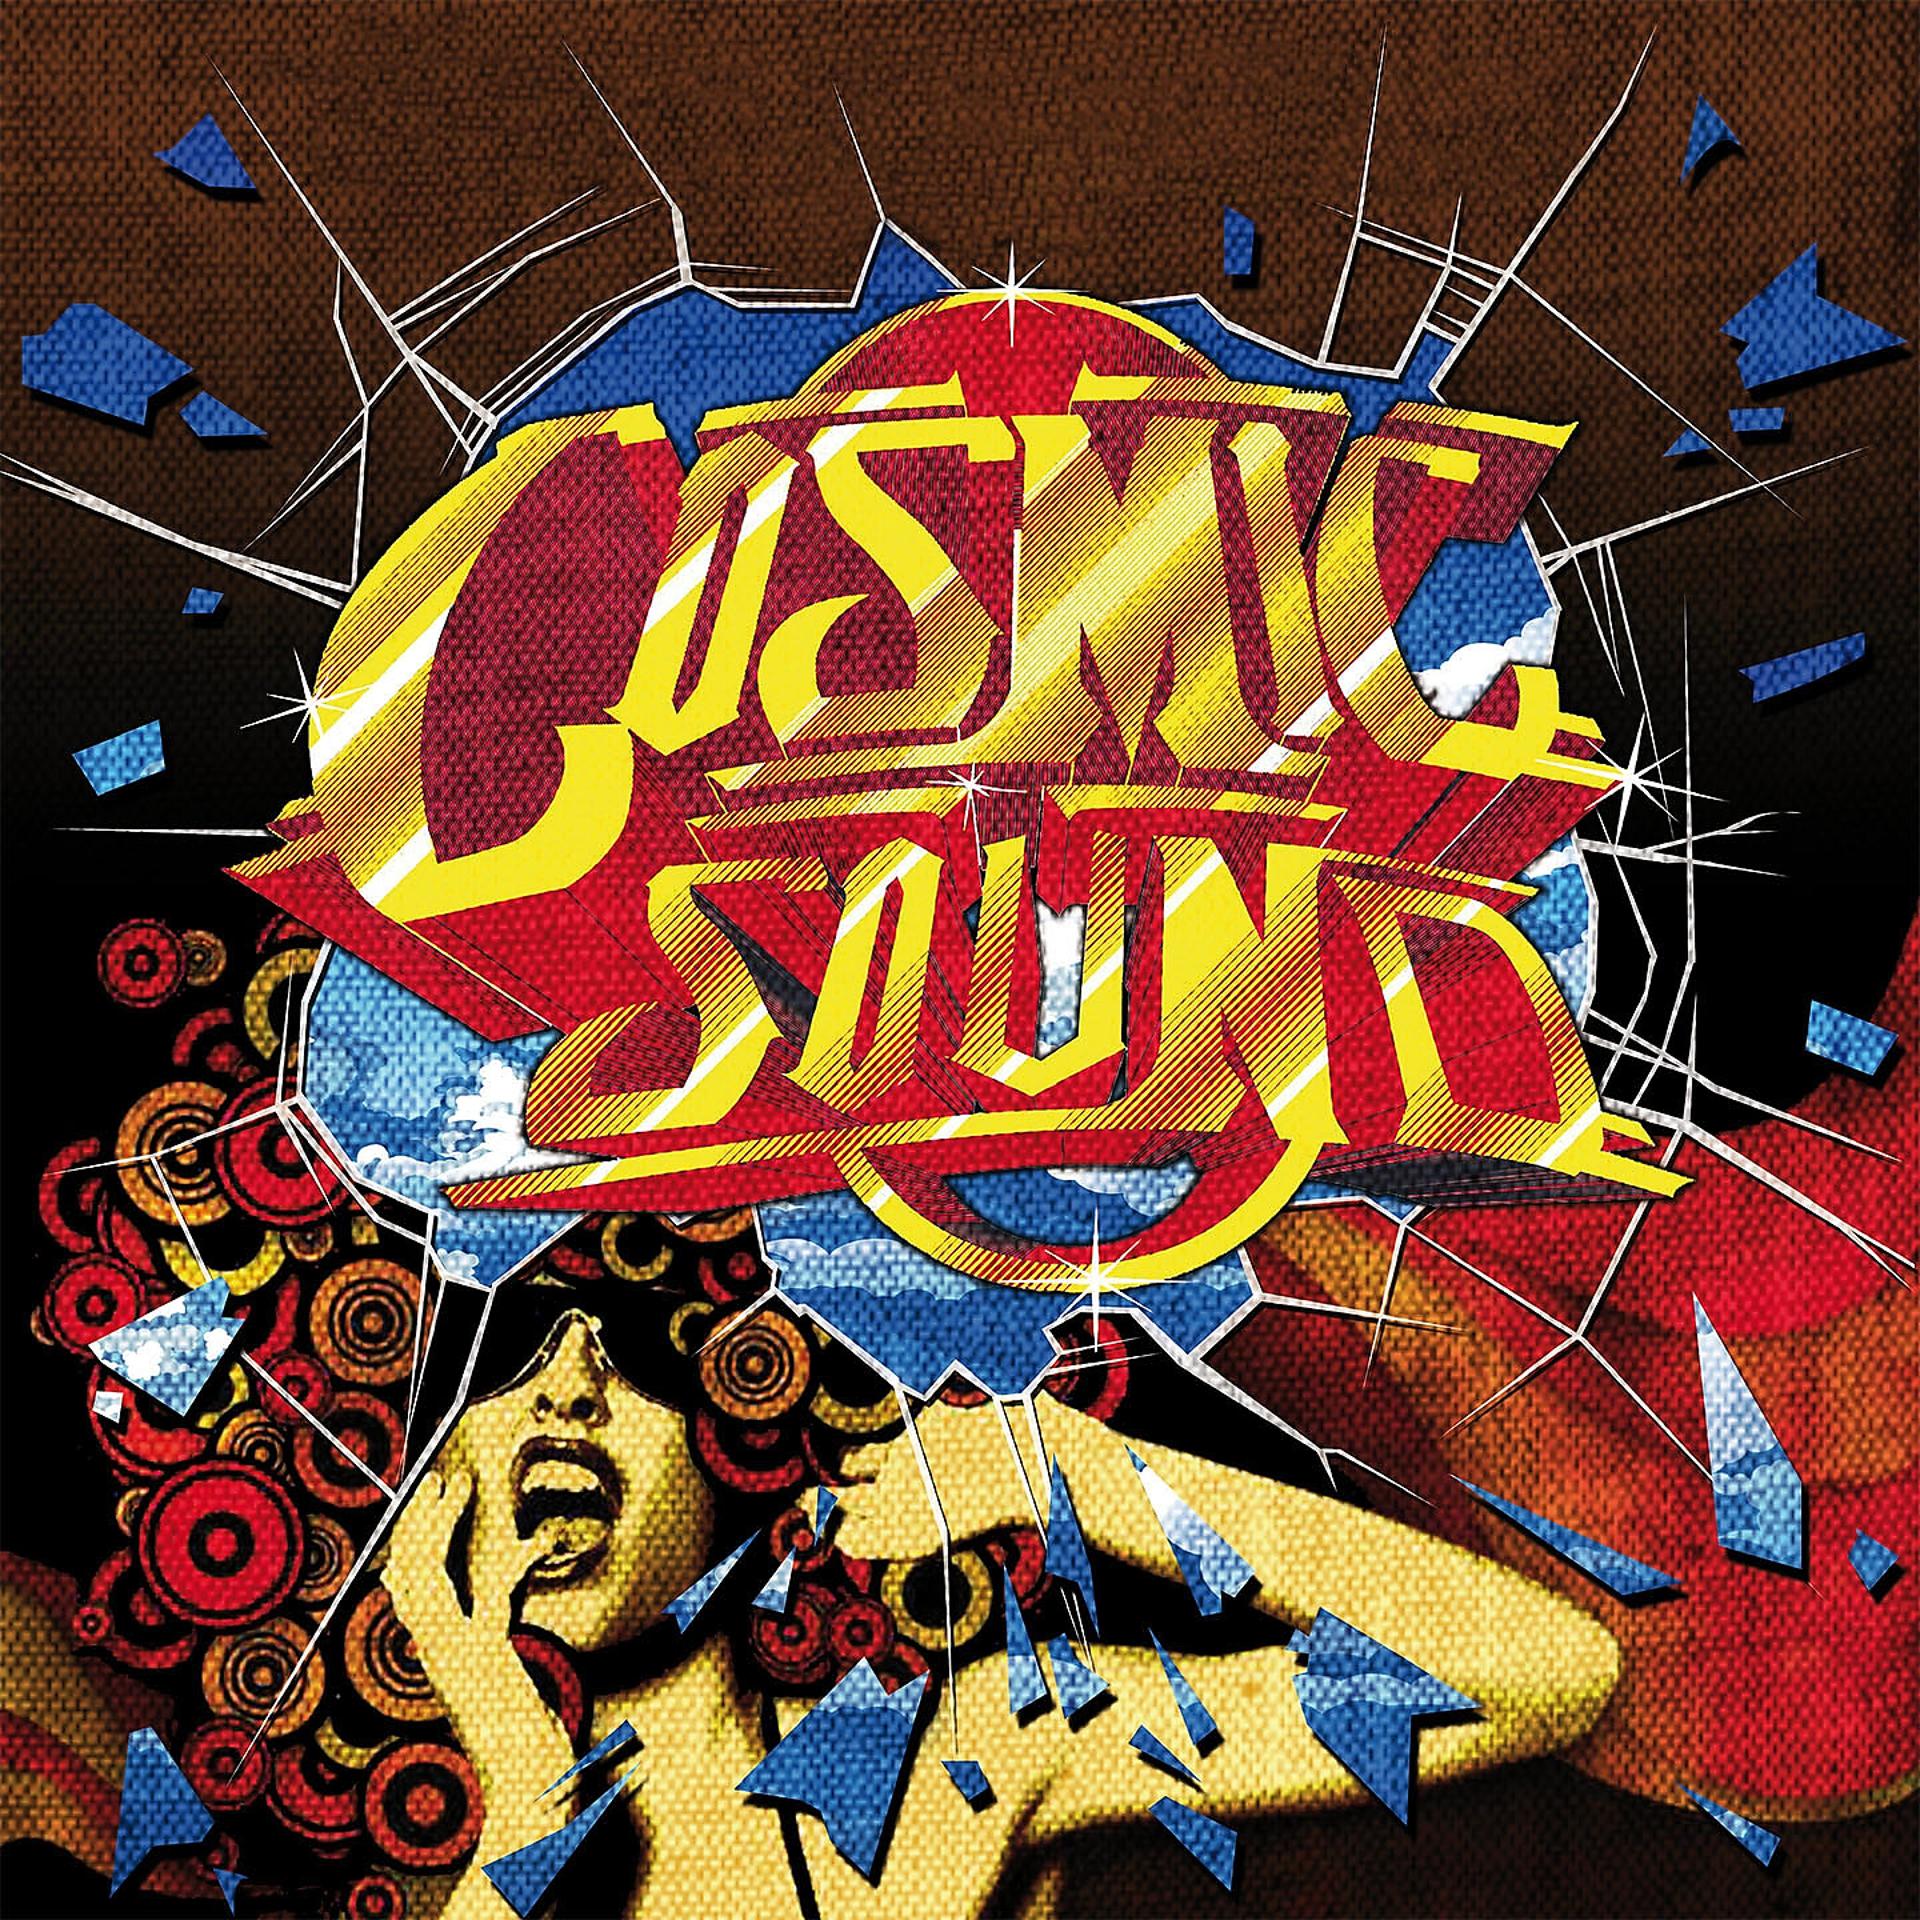 Постер альбома Cosmic Sound